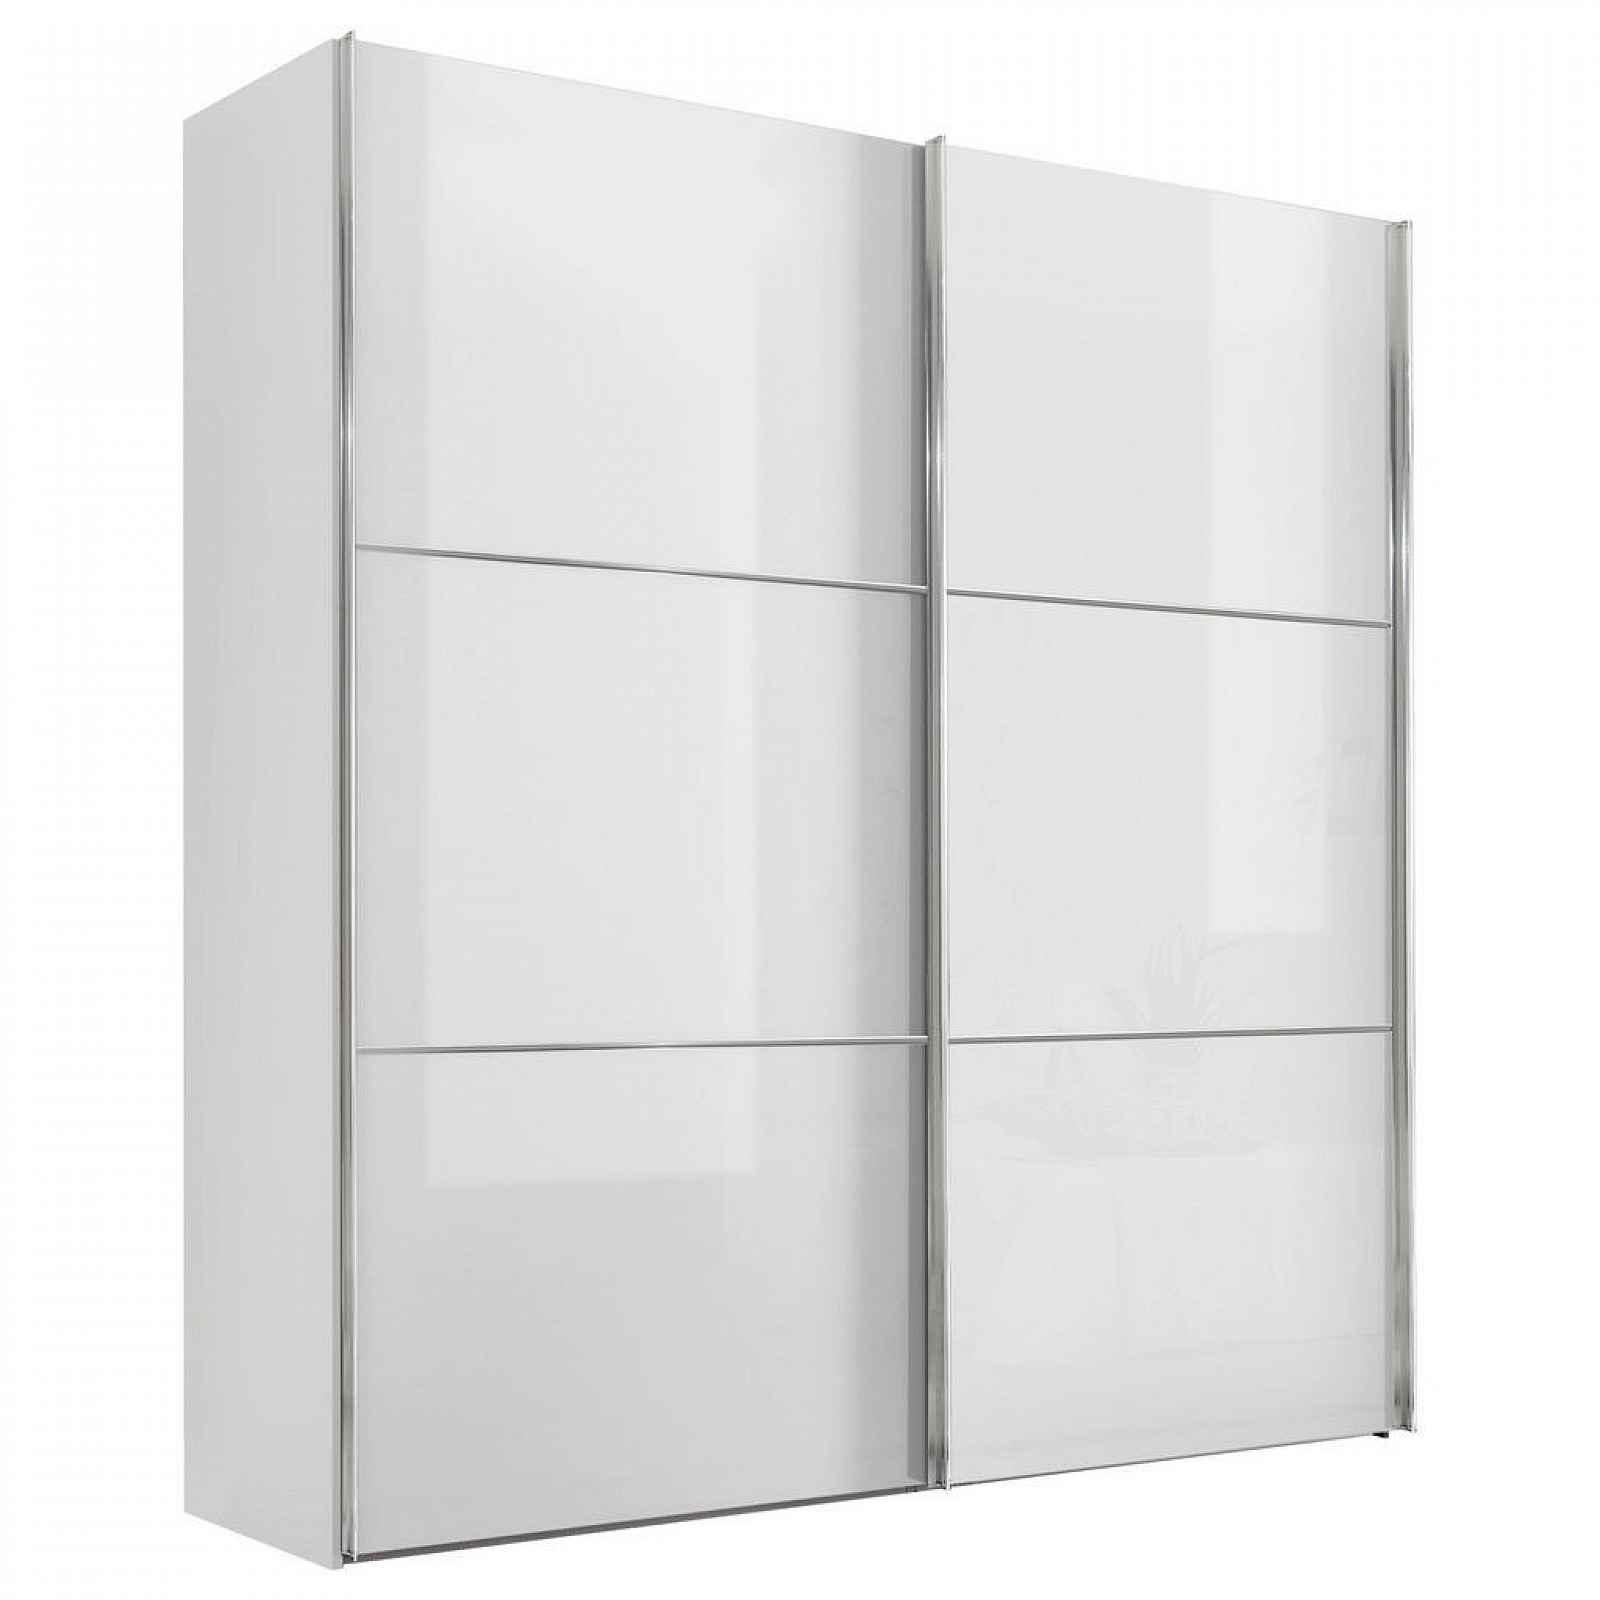 Moderano SCHWEBETÜRENSCHRANK Glasfront, bílá, 225/222/68 cm - Šatní skříně - 000531006075